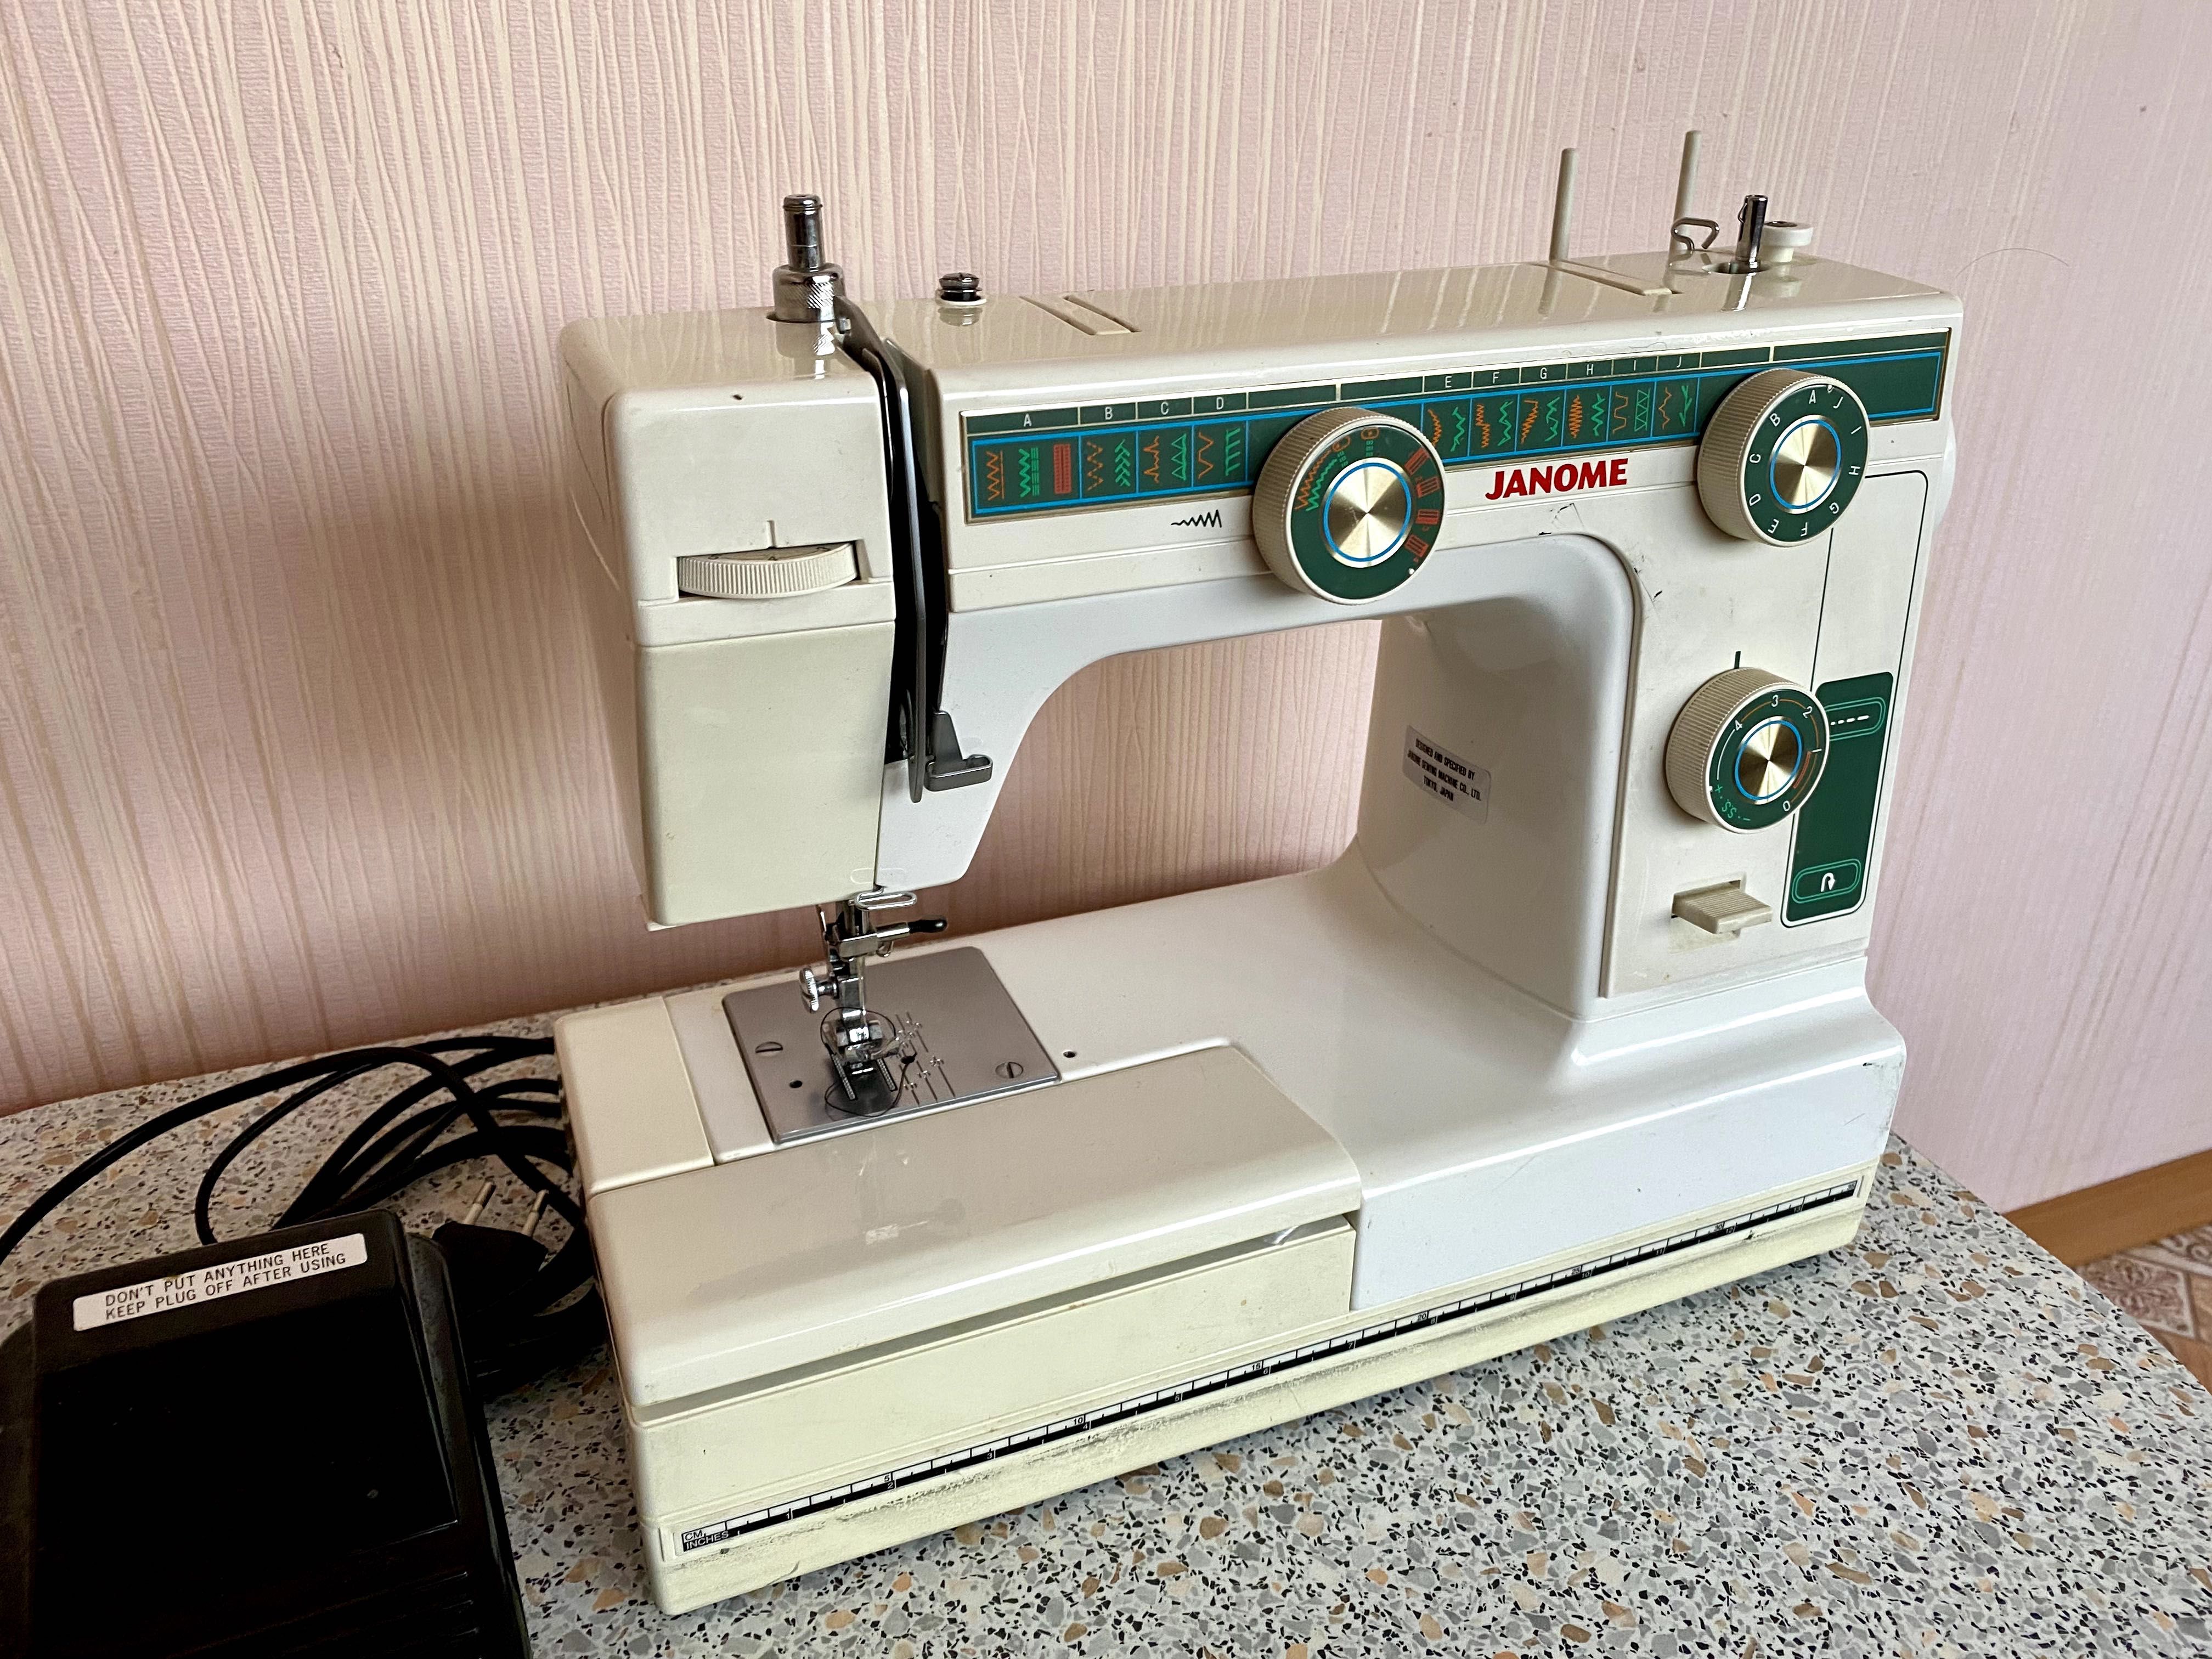 Продам швейну машину Janome L-394